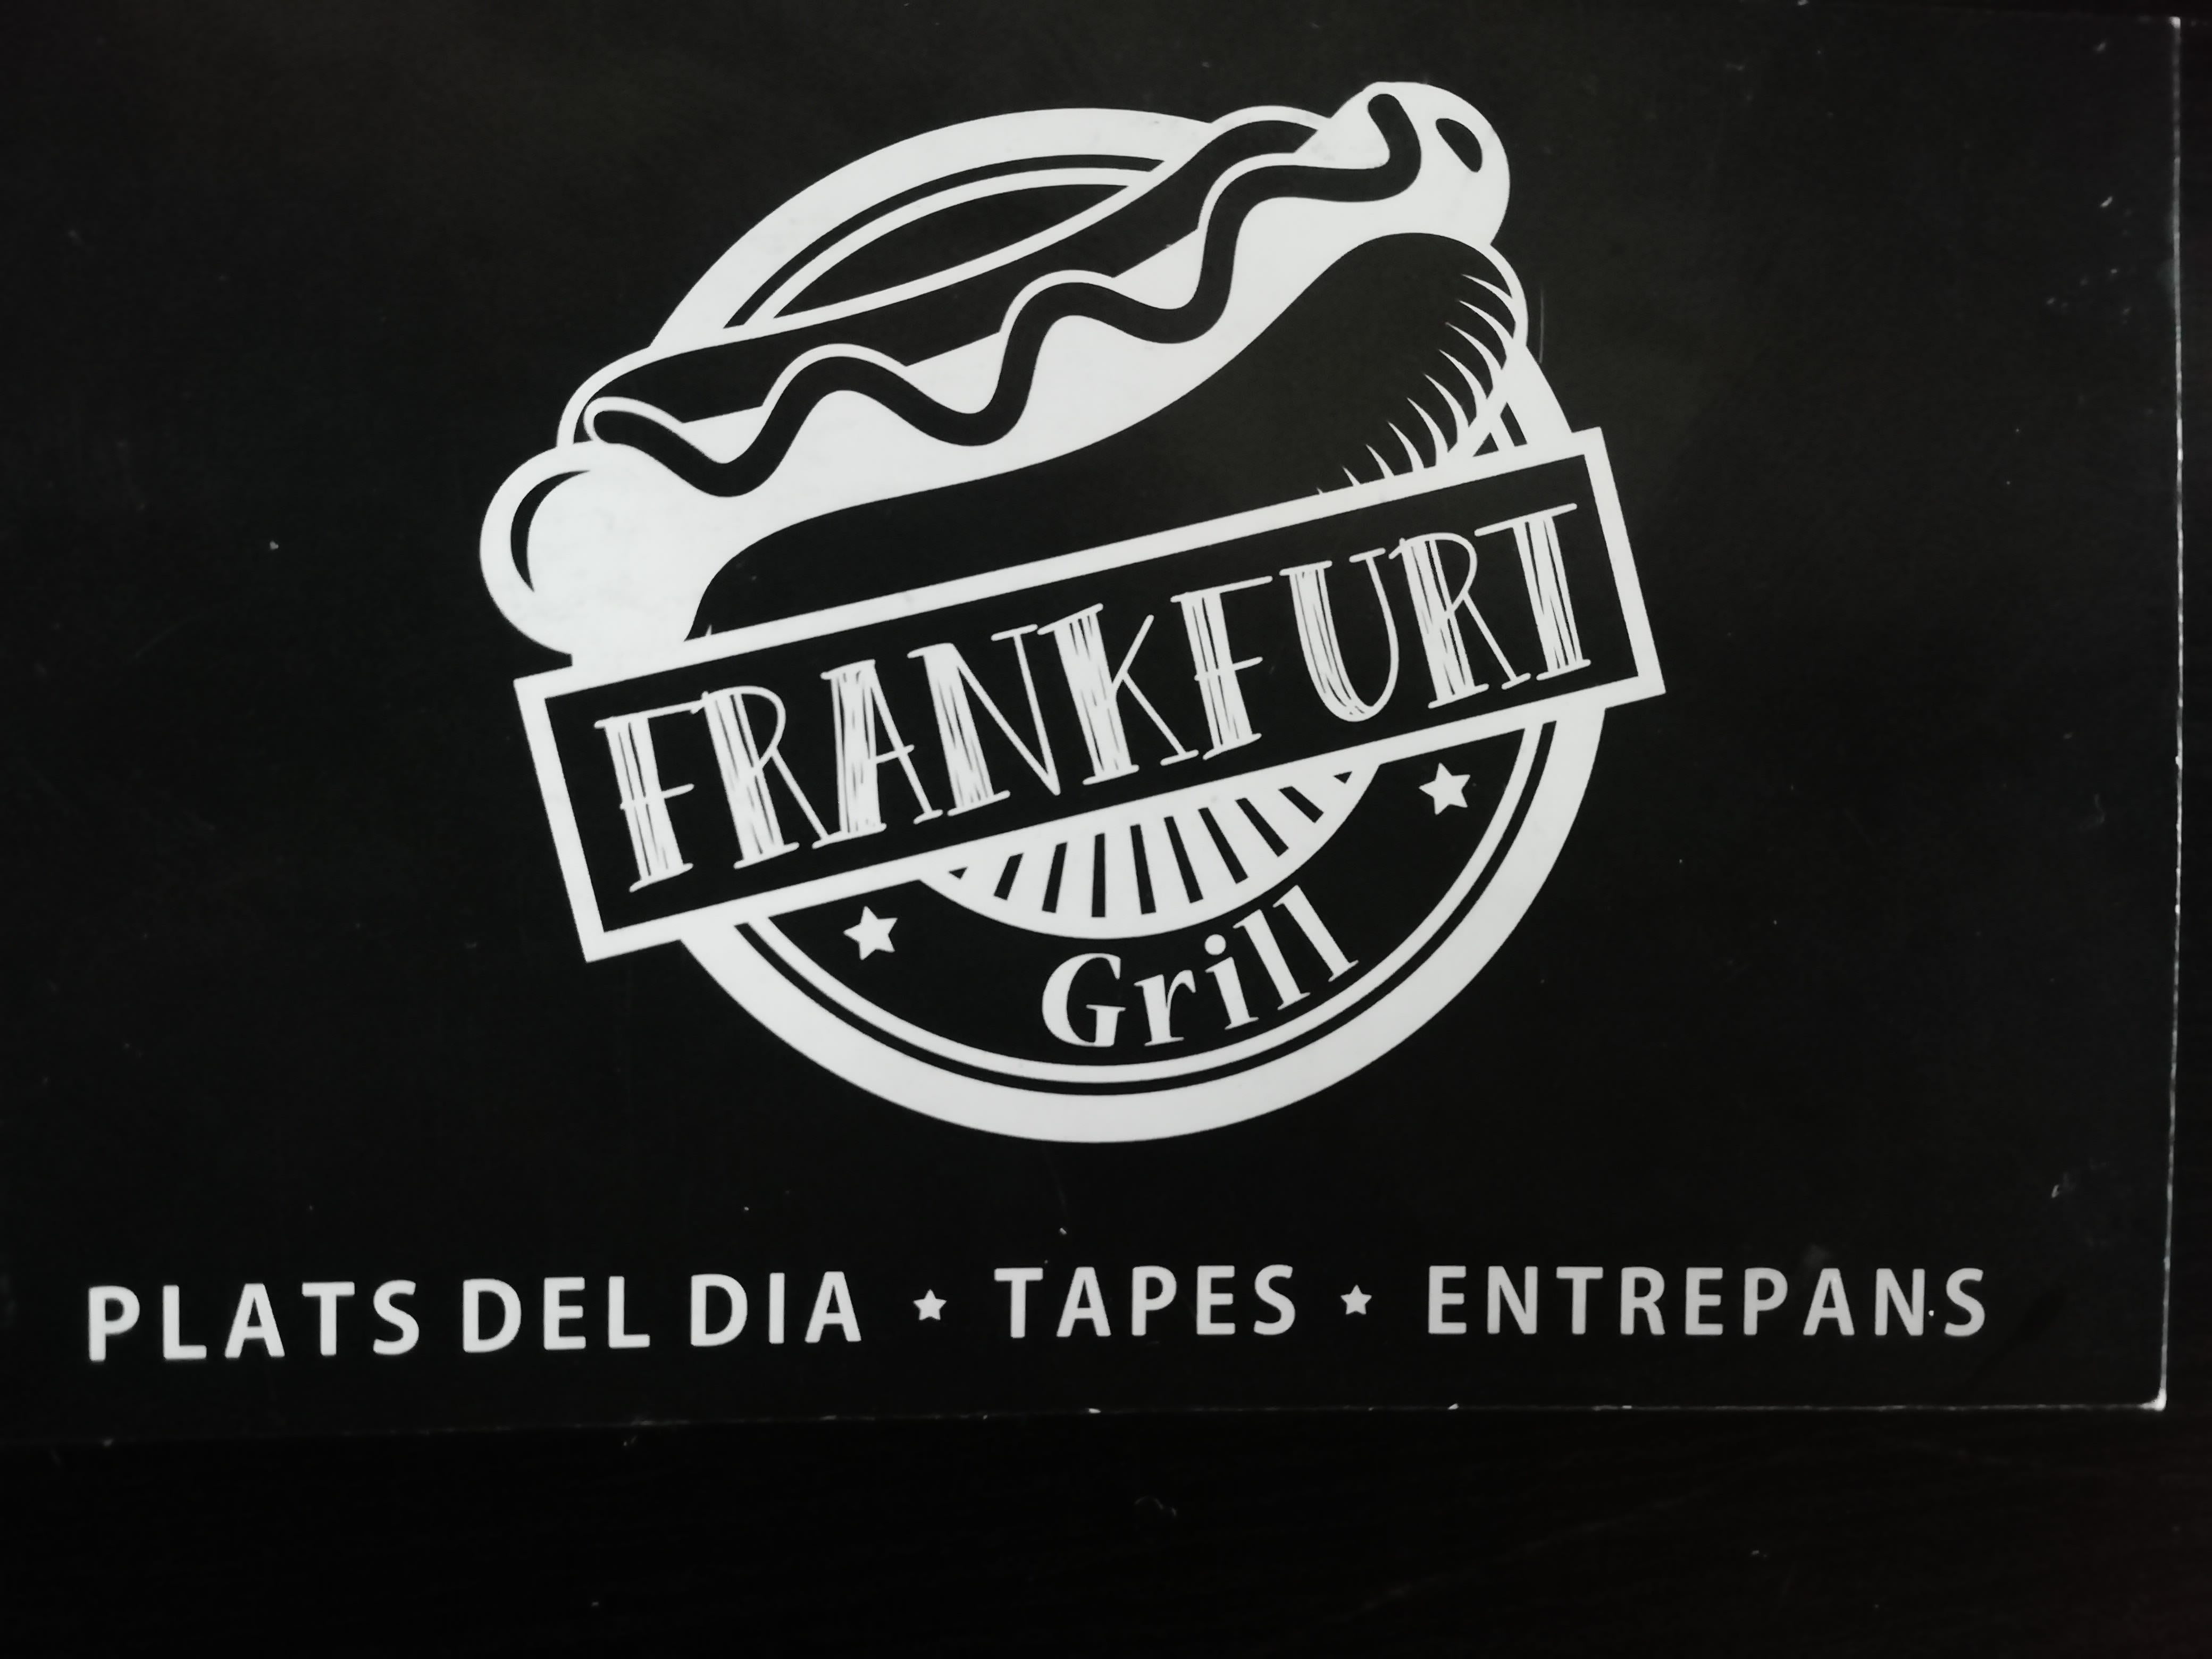 Frank Furt Grill